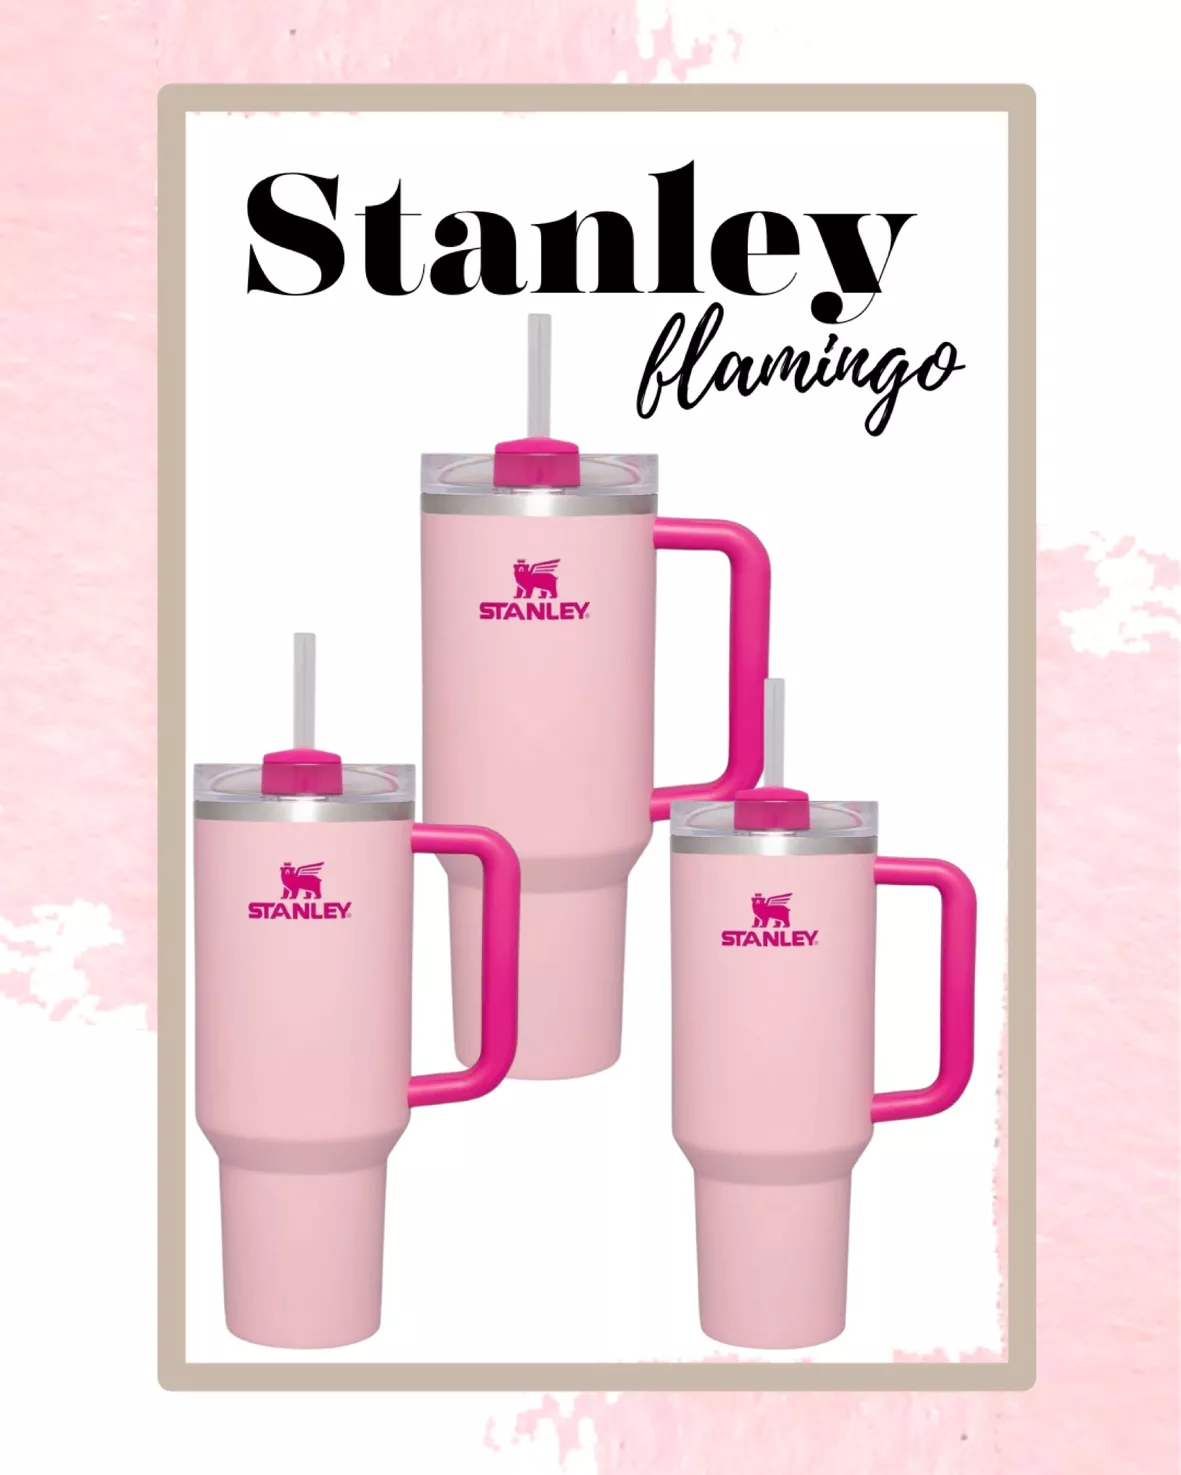 Stanley Flamingo